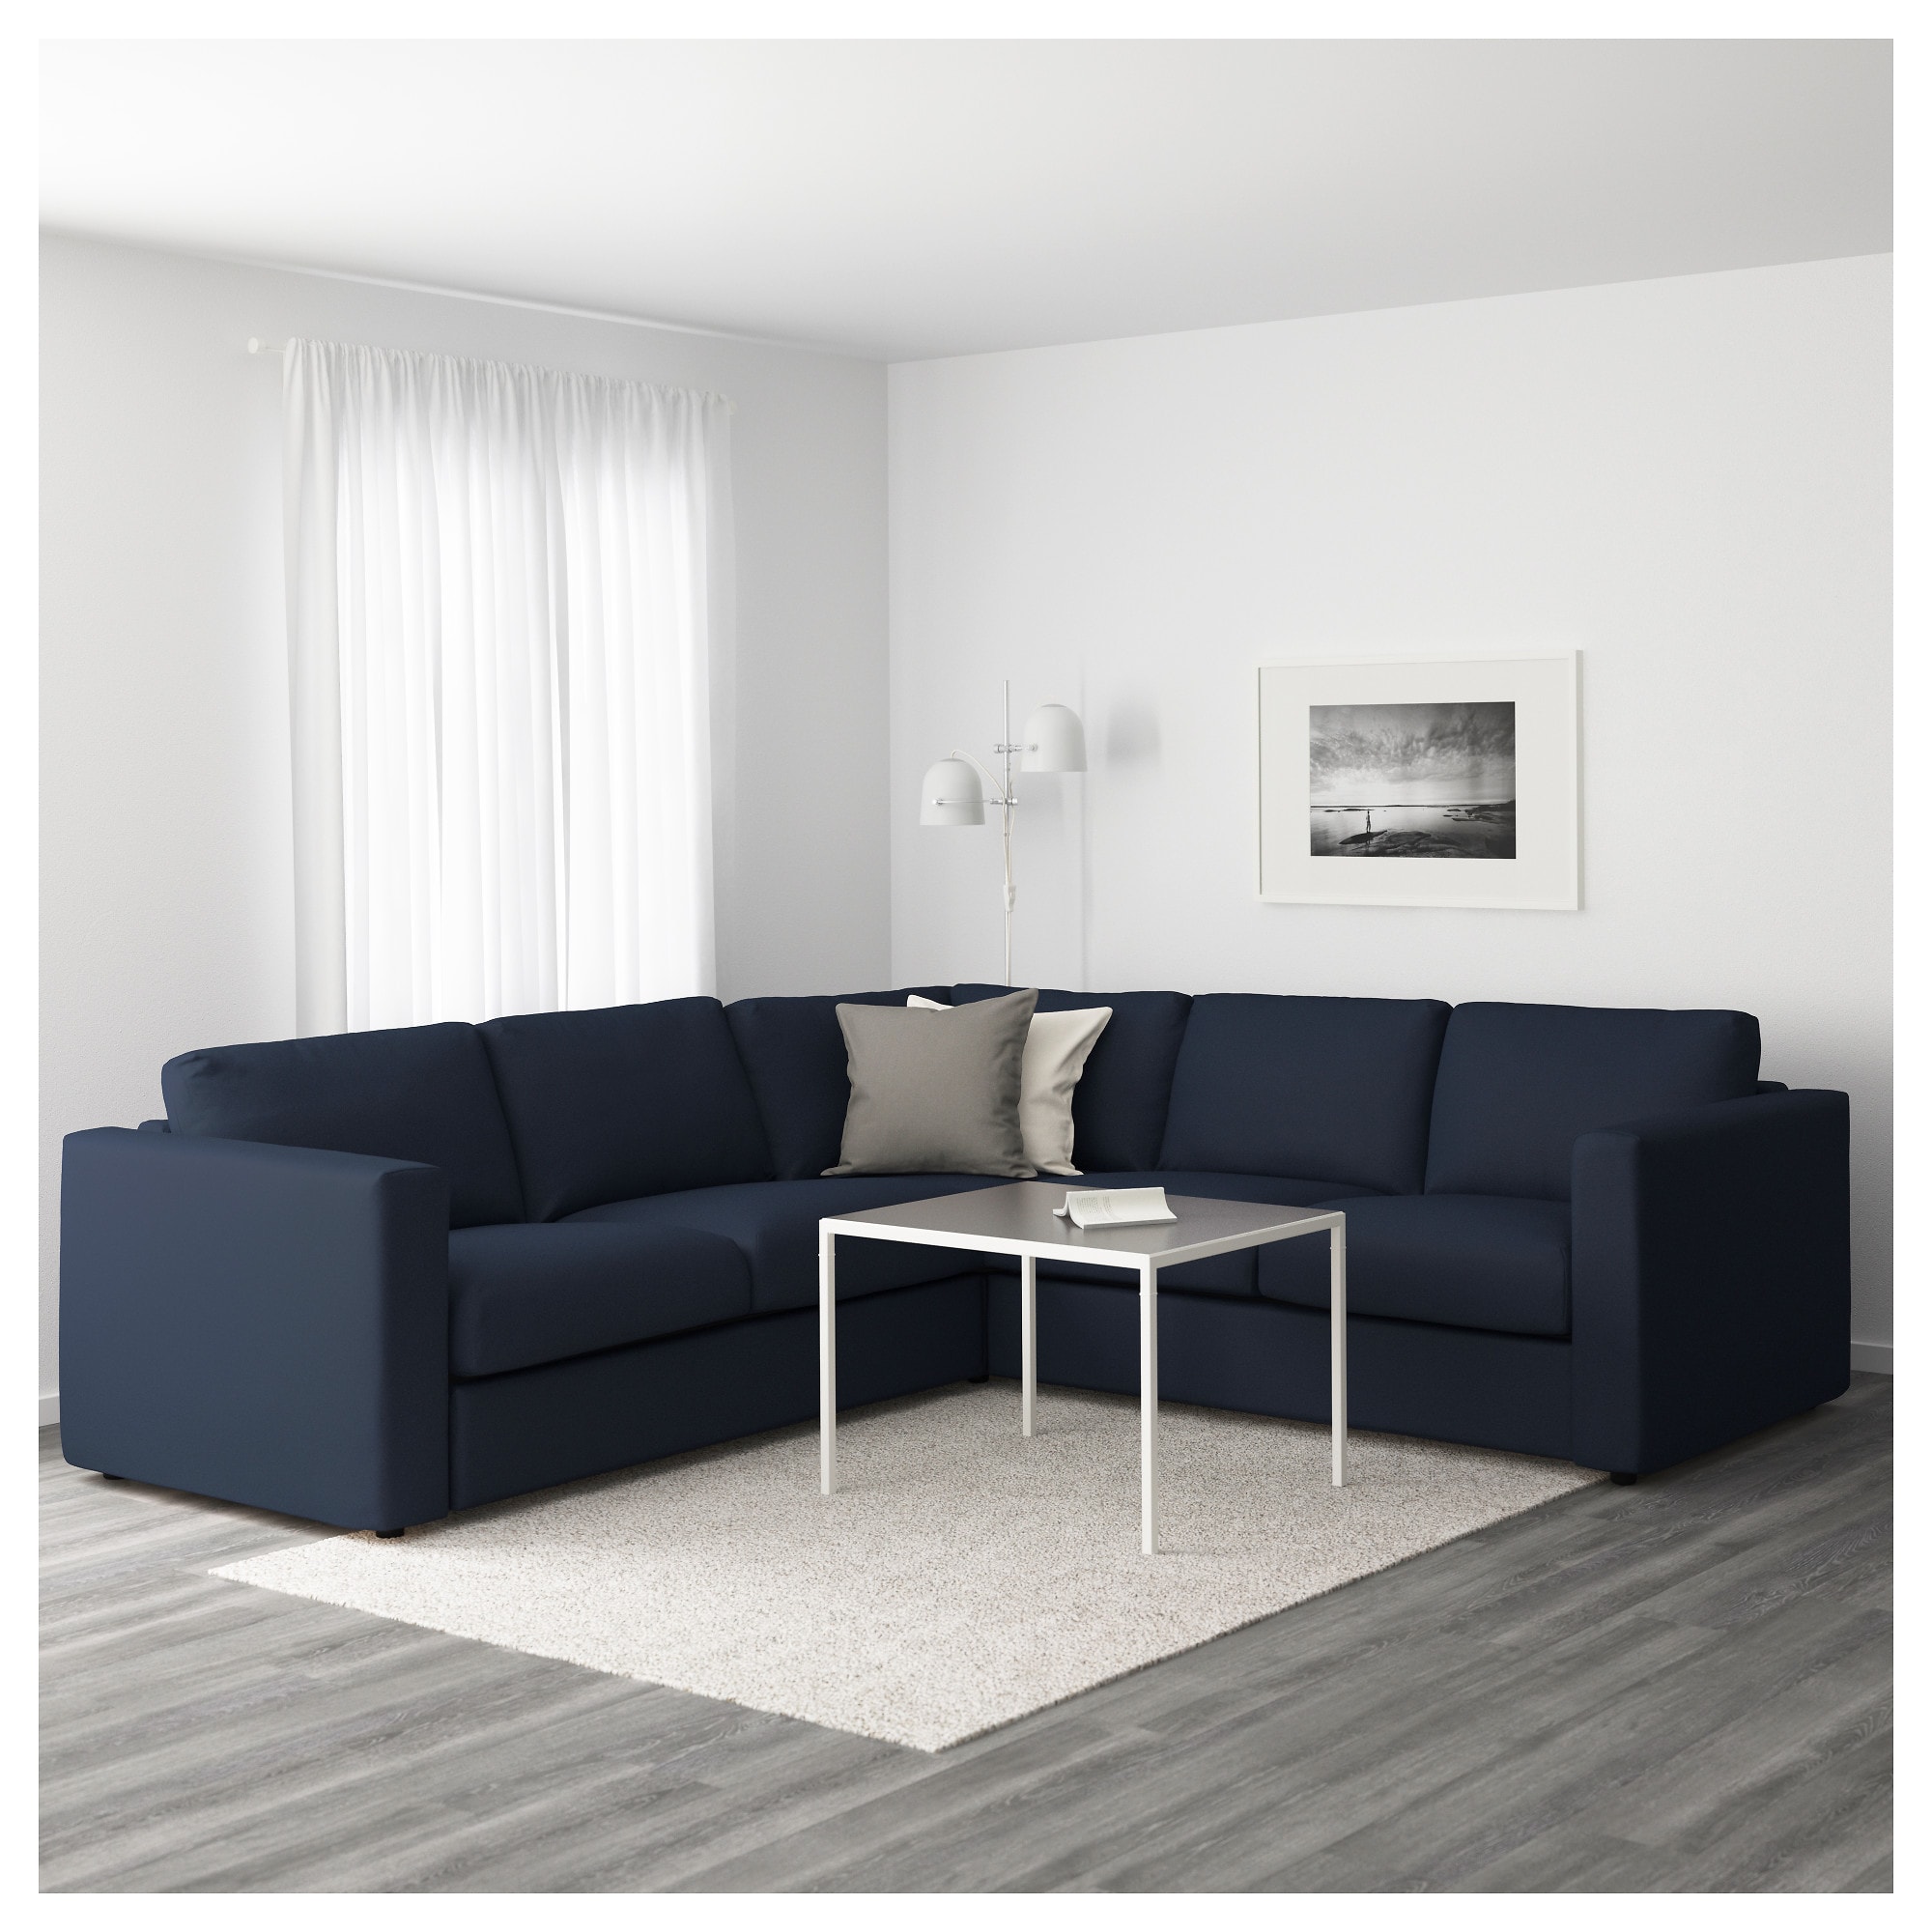 Серый диван в современном стиле